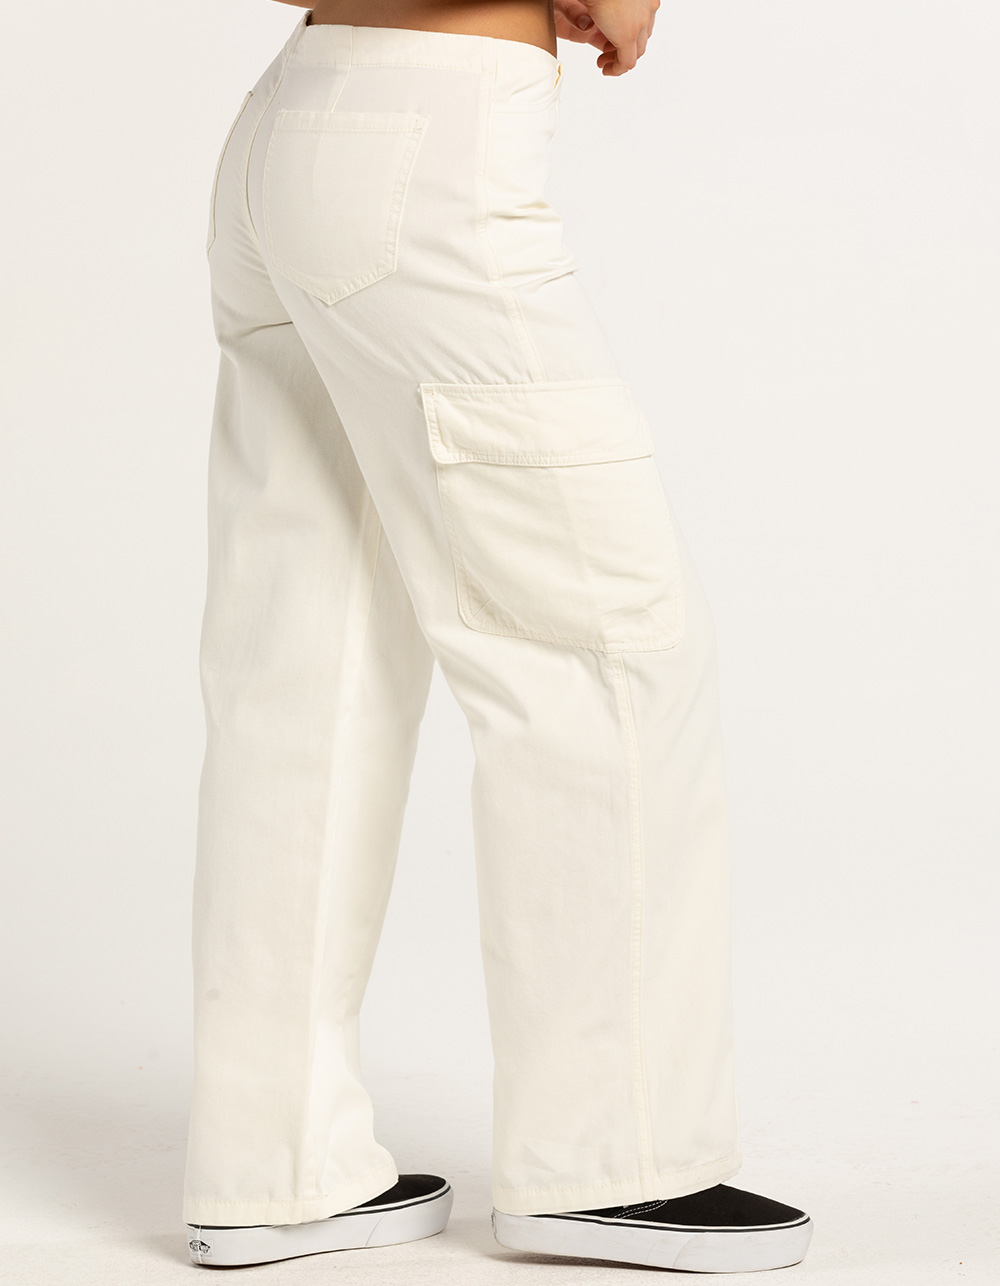 Frehsky cargo pants women Women Fashion Vintage Low Waist